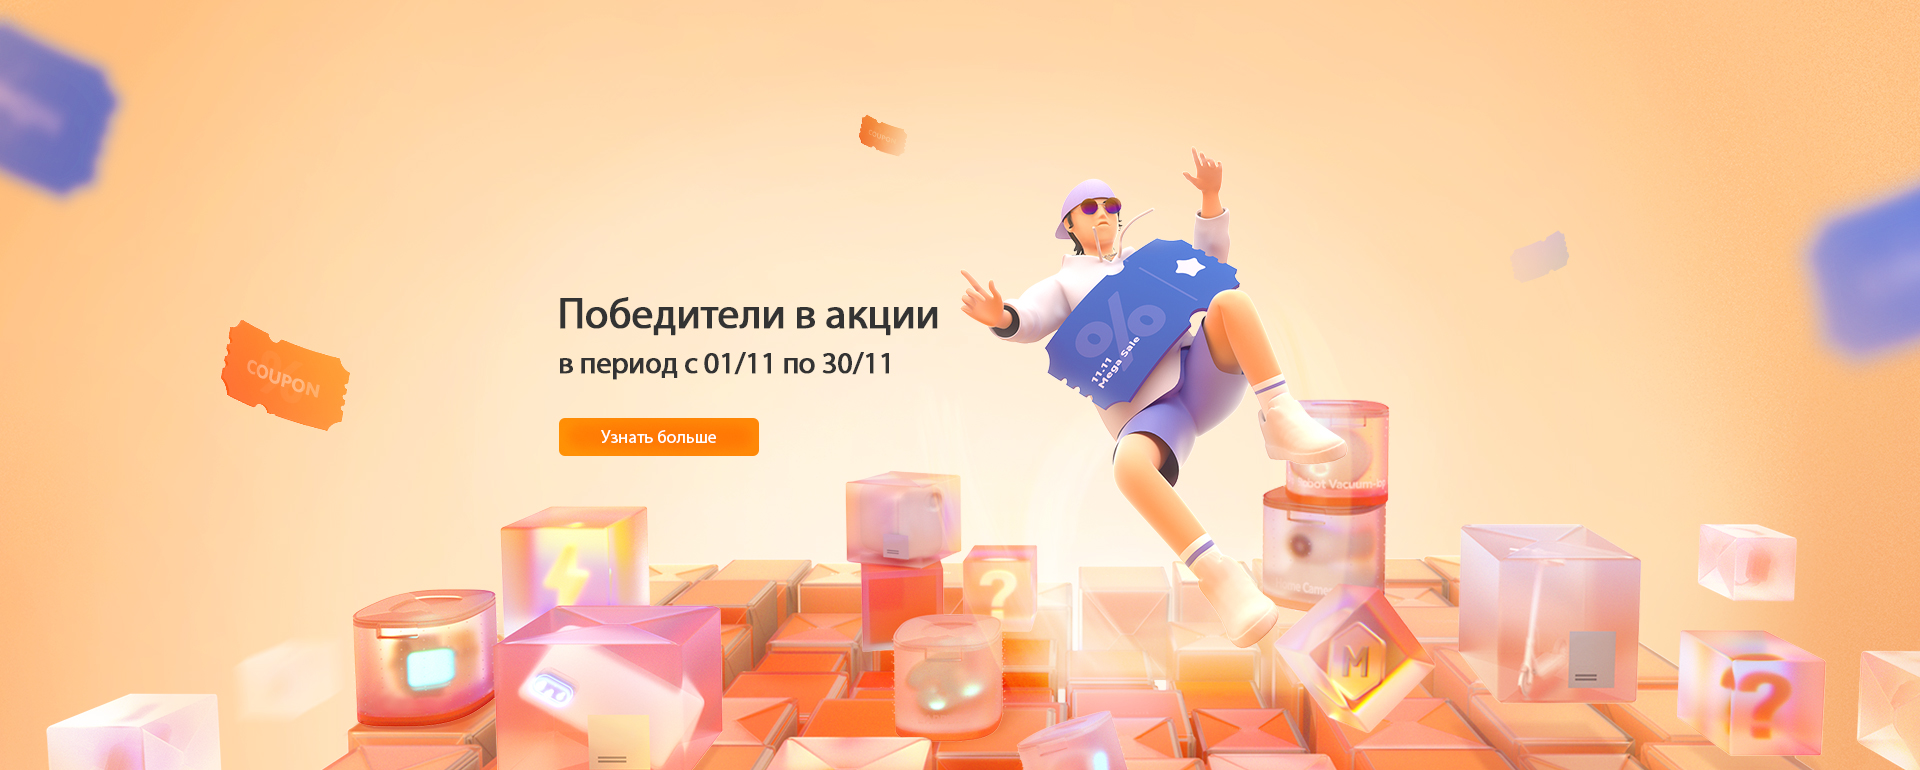 Xiaomi Фирменный Магазин Россия